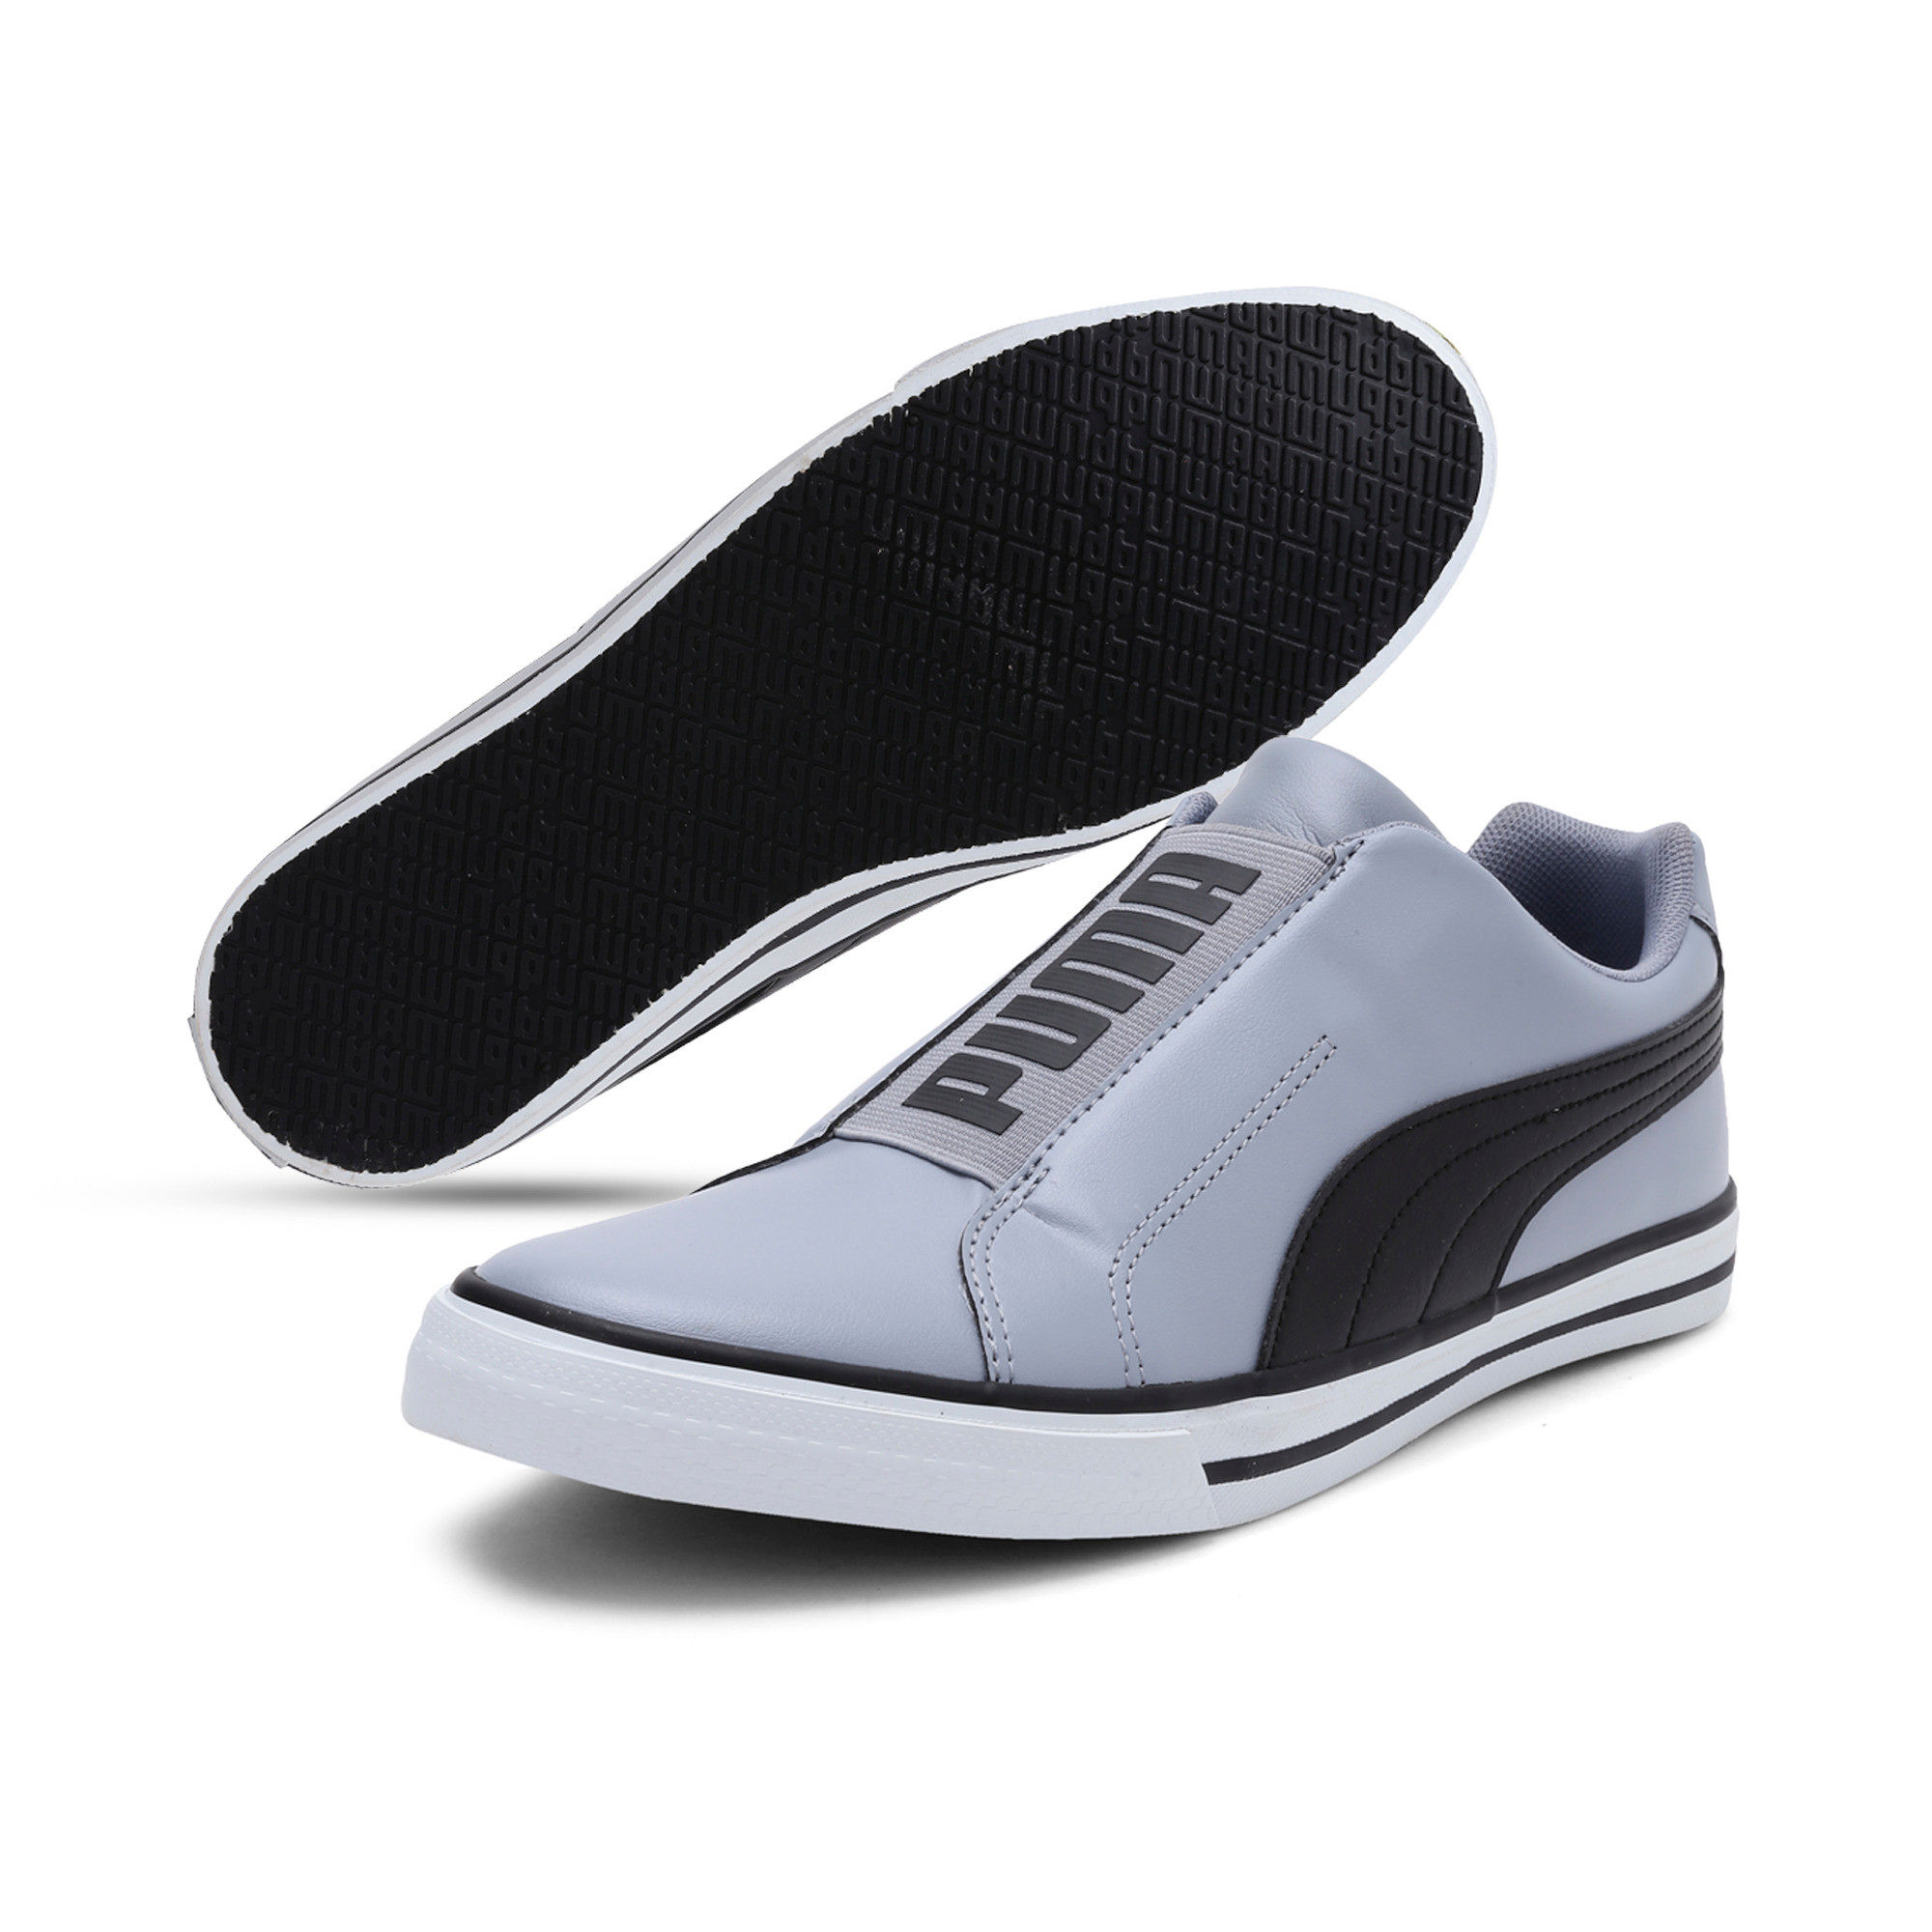 Puma Cappela Idp Shoes: Buy Puma 